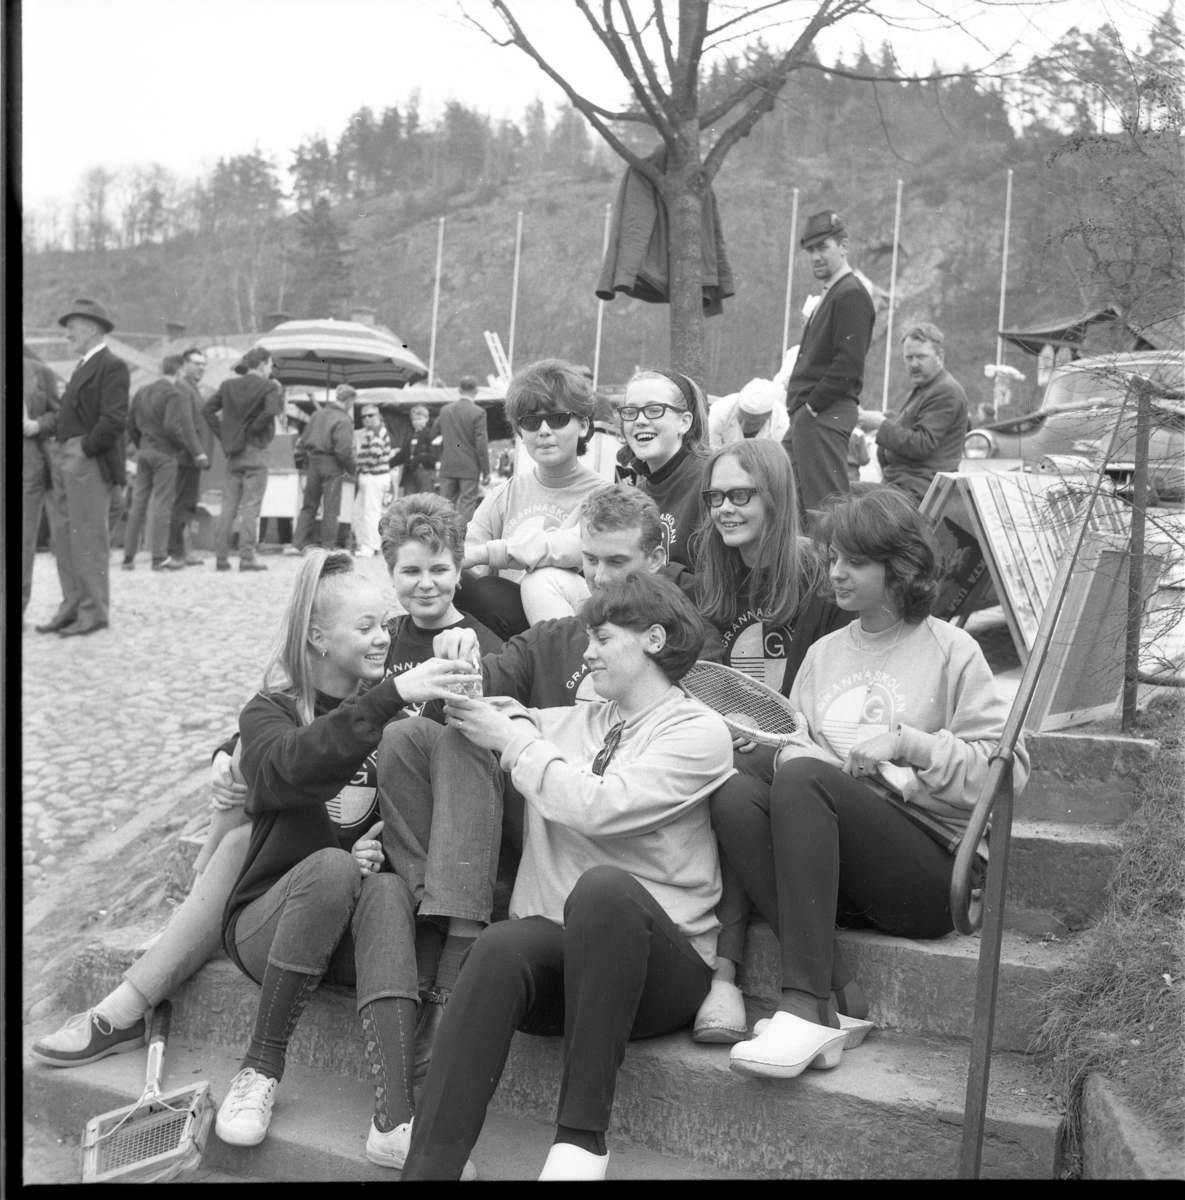 Grännaskoleelever södra trappan vid Gränna torg, 1964. Längst ned till vänster sitter Marita Wallmo, högst upp till höger sitter Monica Granbom och snett nedanför henne med glasögon sitter Lena Blomqvist. De äter godis ur en påse. En flicka har ett tennisrack i knät. 
Det är marknad på torget